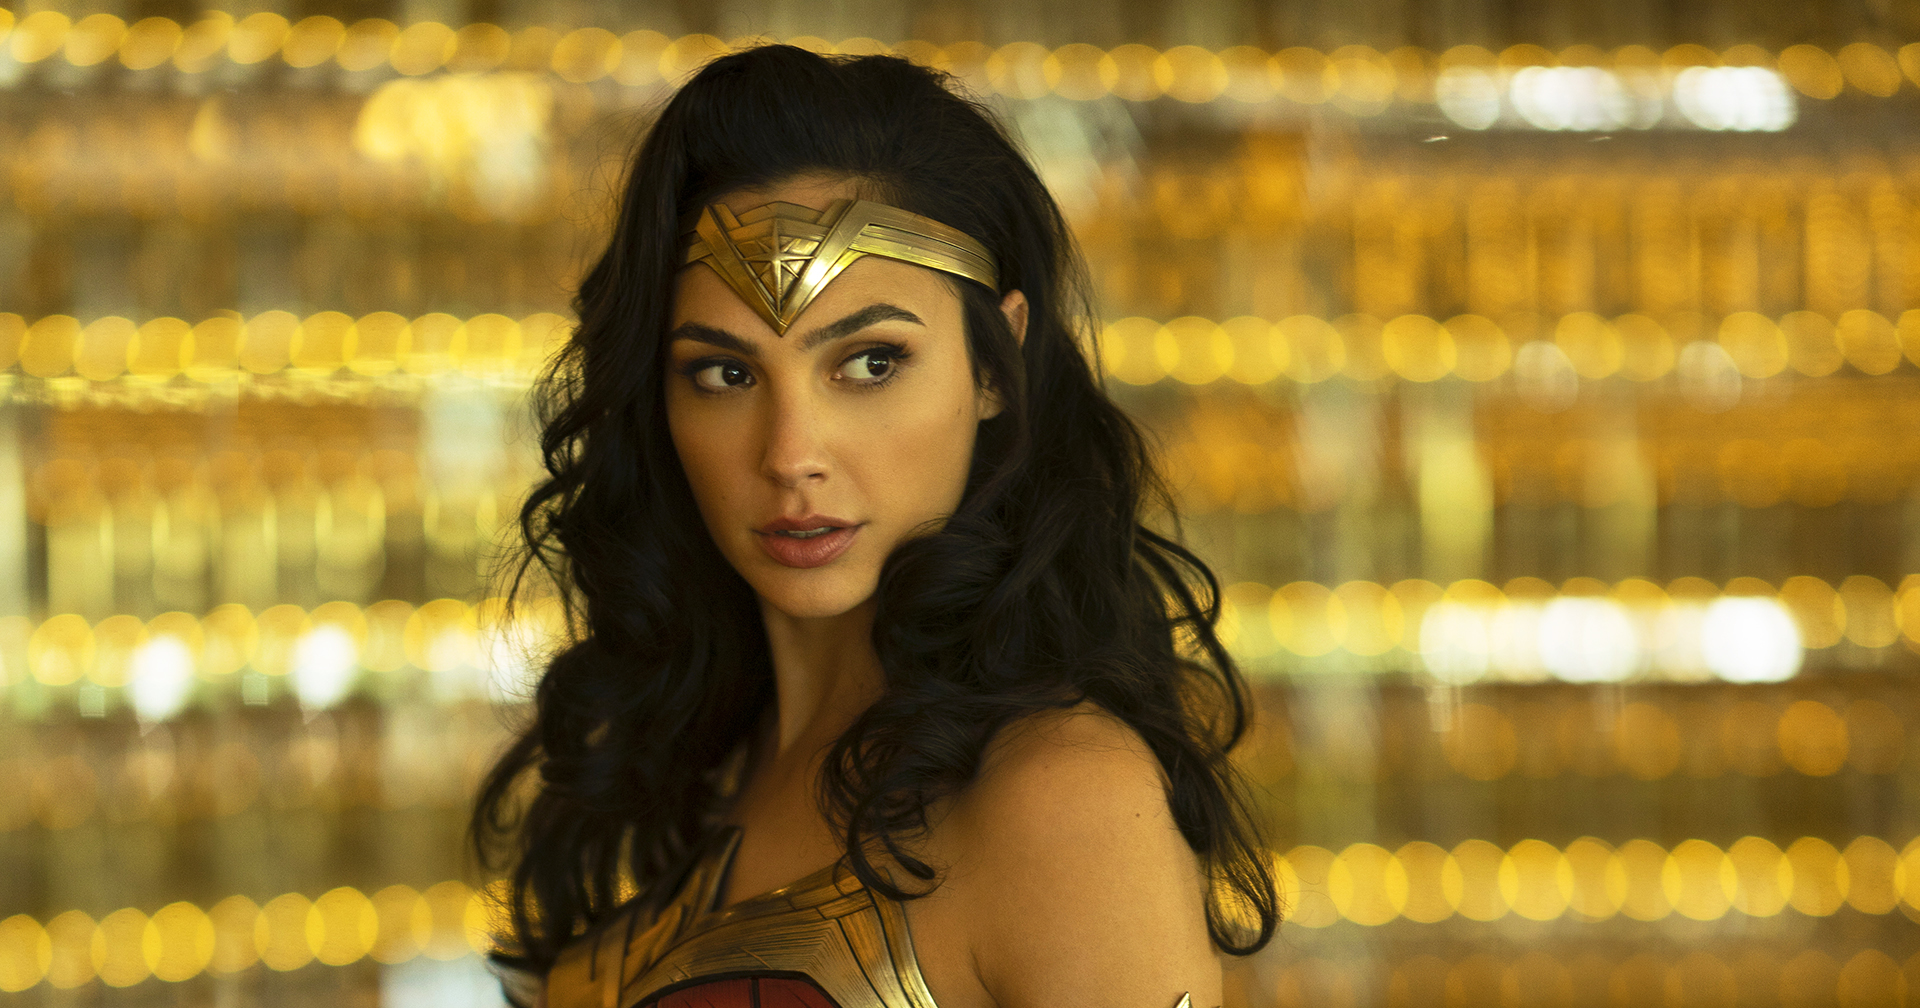 DC ยังไม่สนใจจะสร้าง ‘Wonder Woman’ ภาคใหม่ในตอนนี้